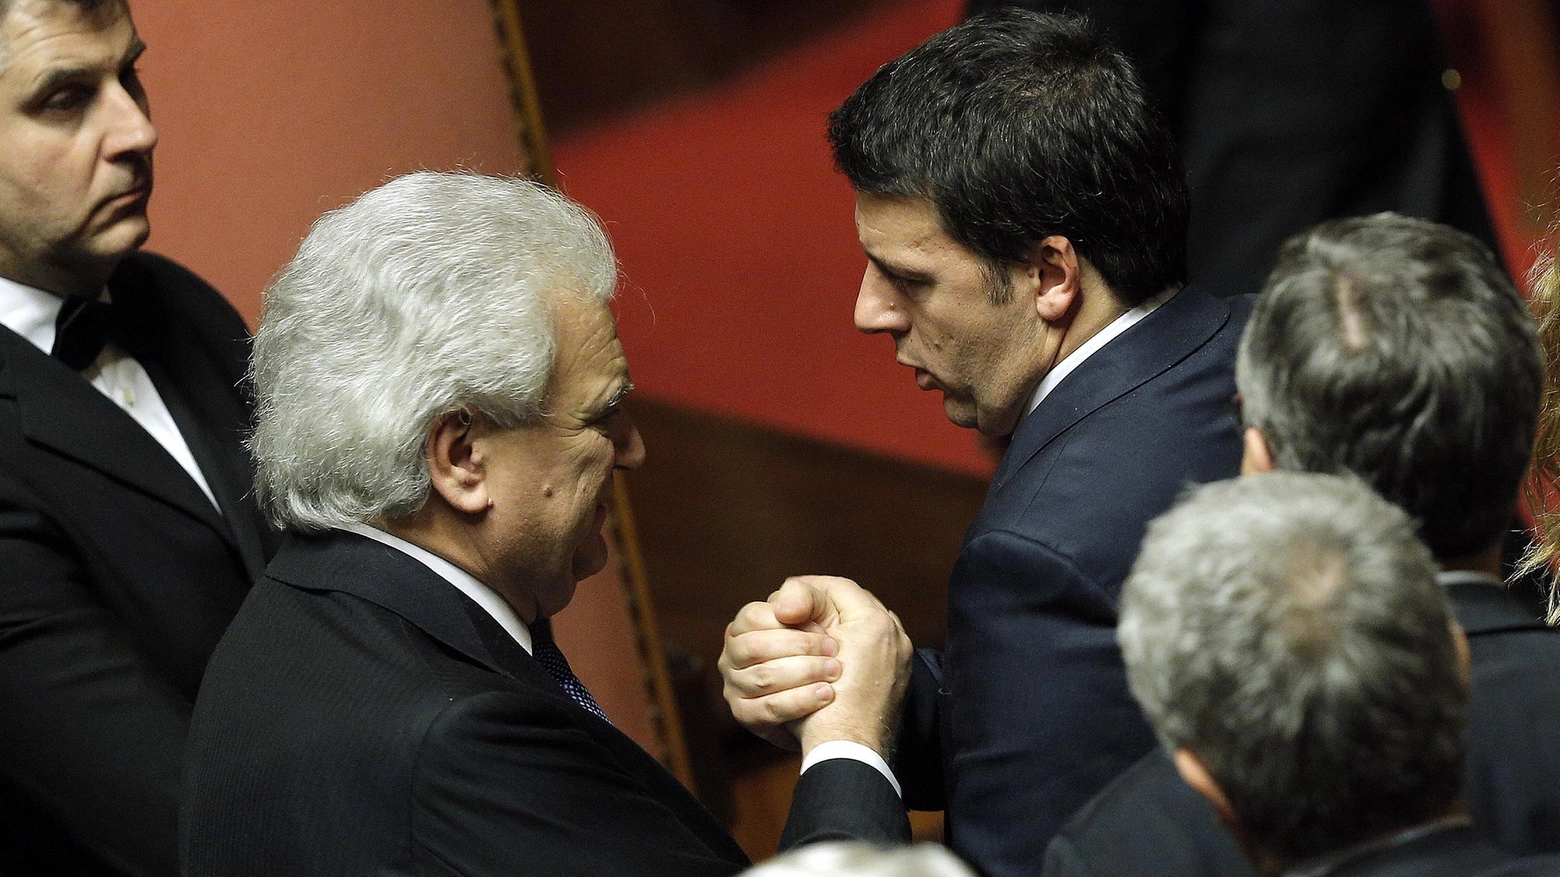 Il presidente del Consiglio Matteo Renzi stringe la mano a Denis Verdini in Senato (Ansa)